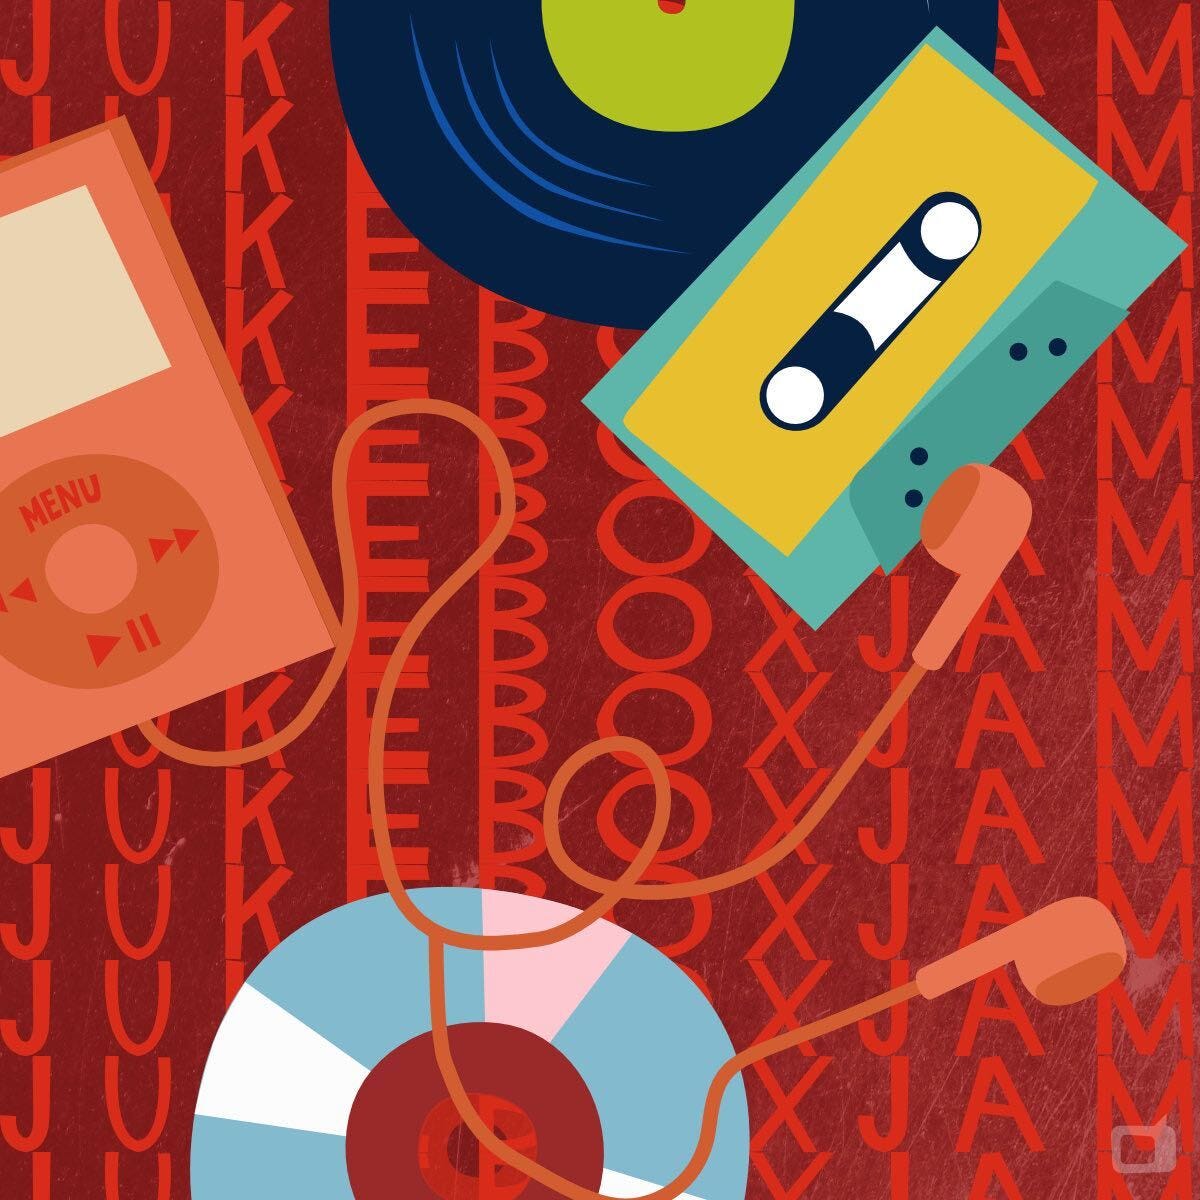 Jukebox Jams on Spotify  | rmrk*st | Remarkist Magazine